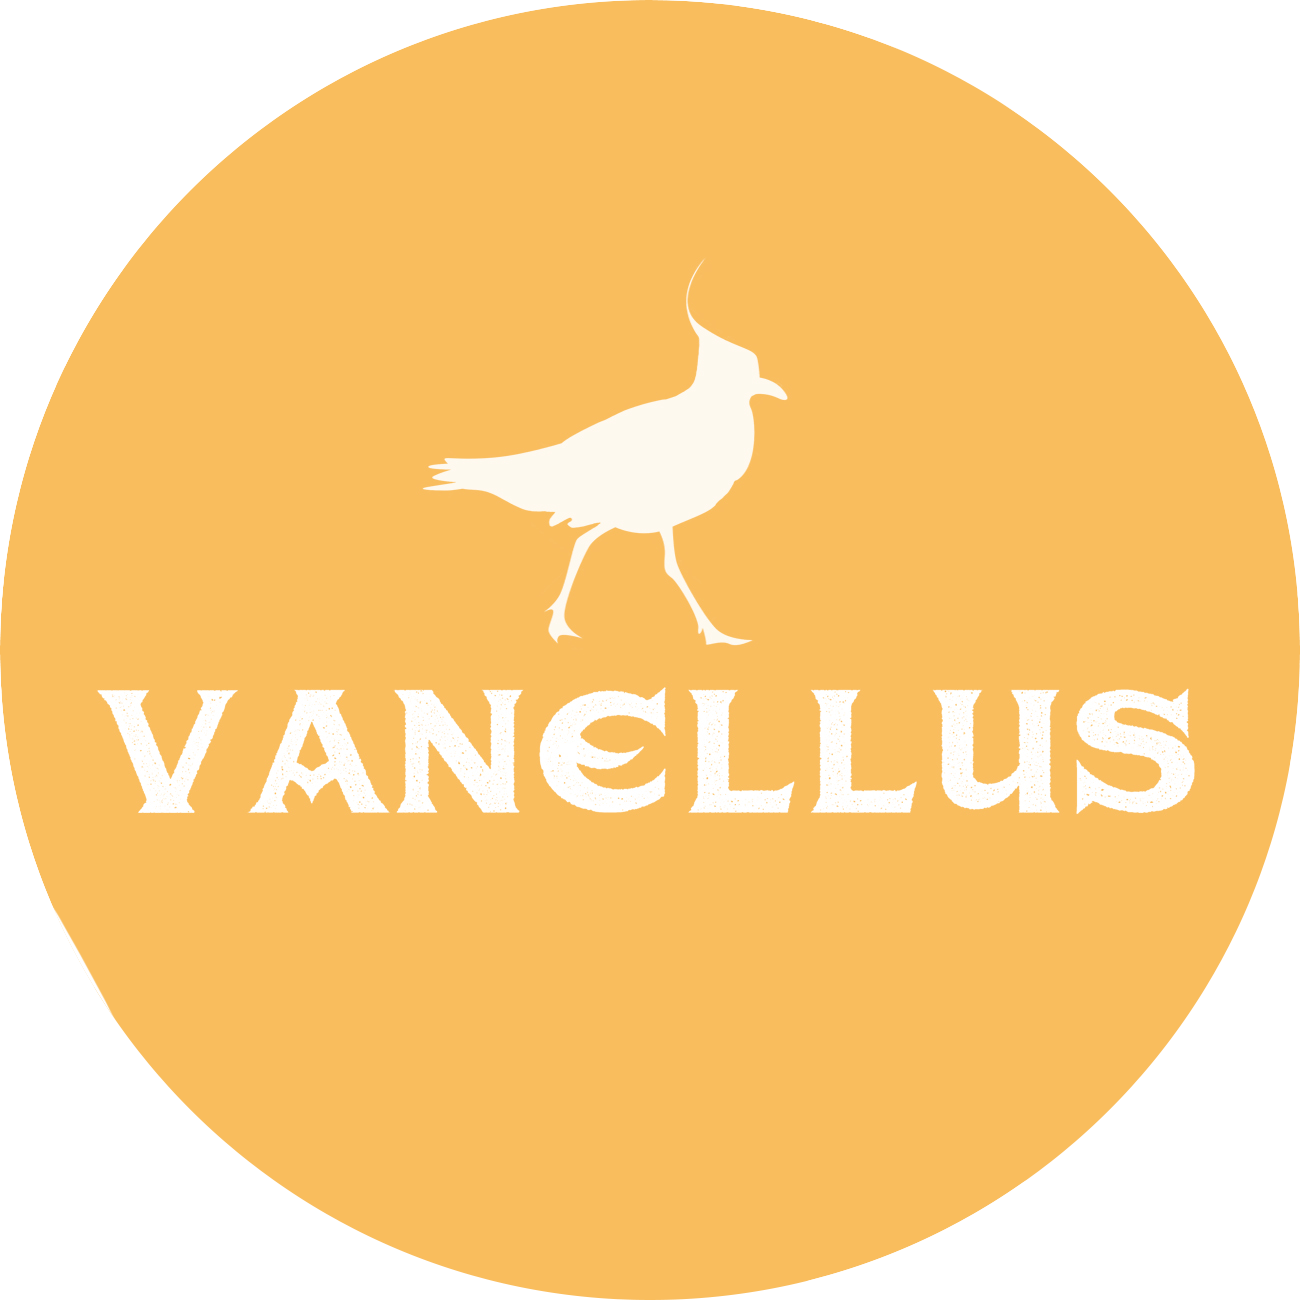 Vanellus Instagram